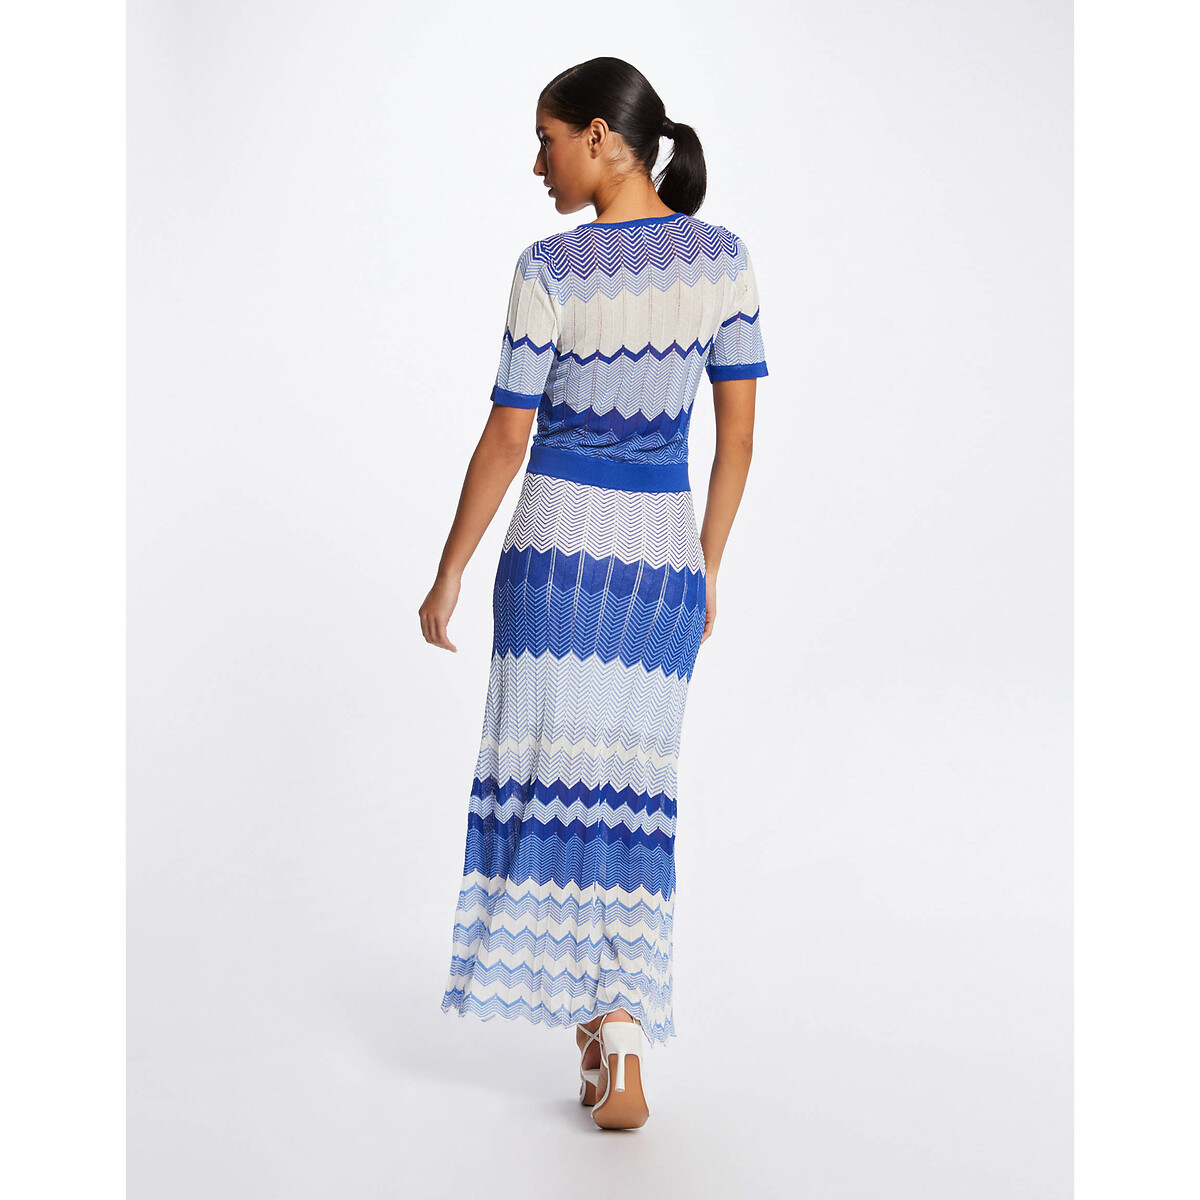 Платье-пуловер Длинное прямое с зигзагообразным принтом L синий LaRedoute, размер L - фото 4